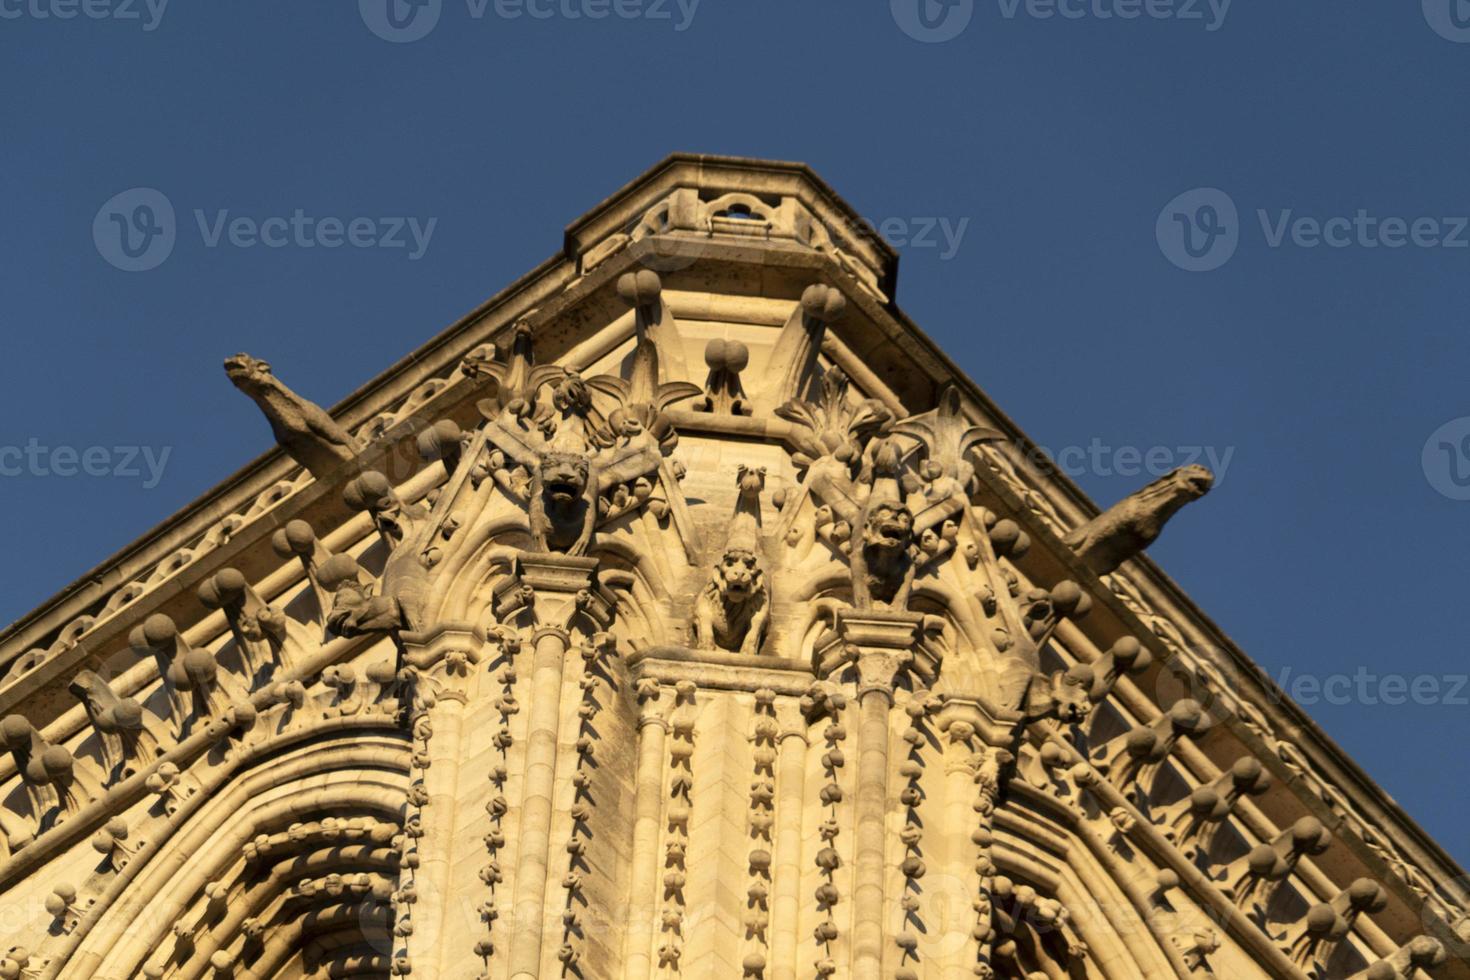 Notre dame Paris cathedral detail photo